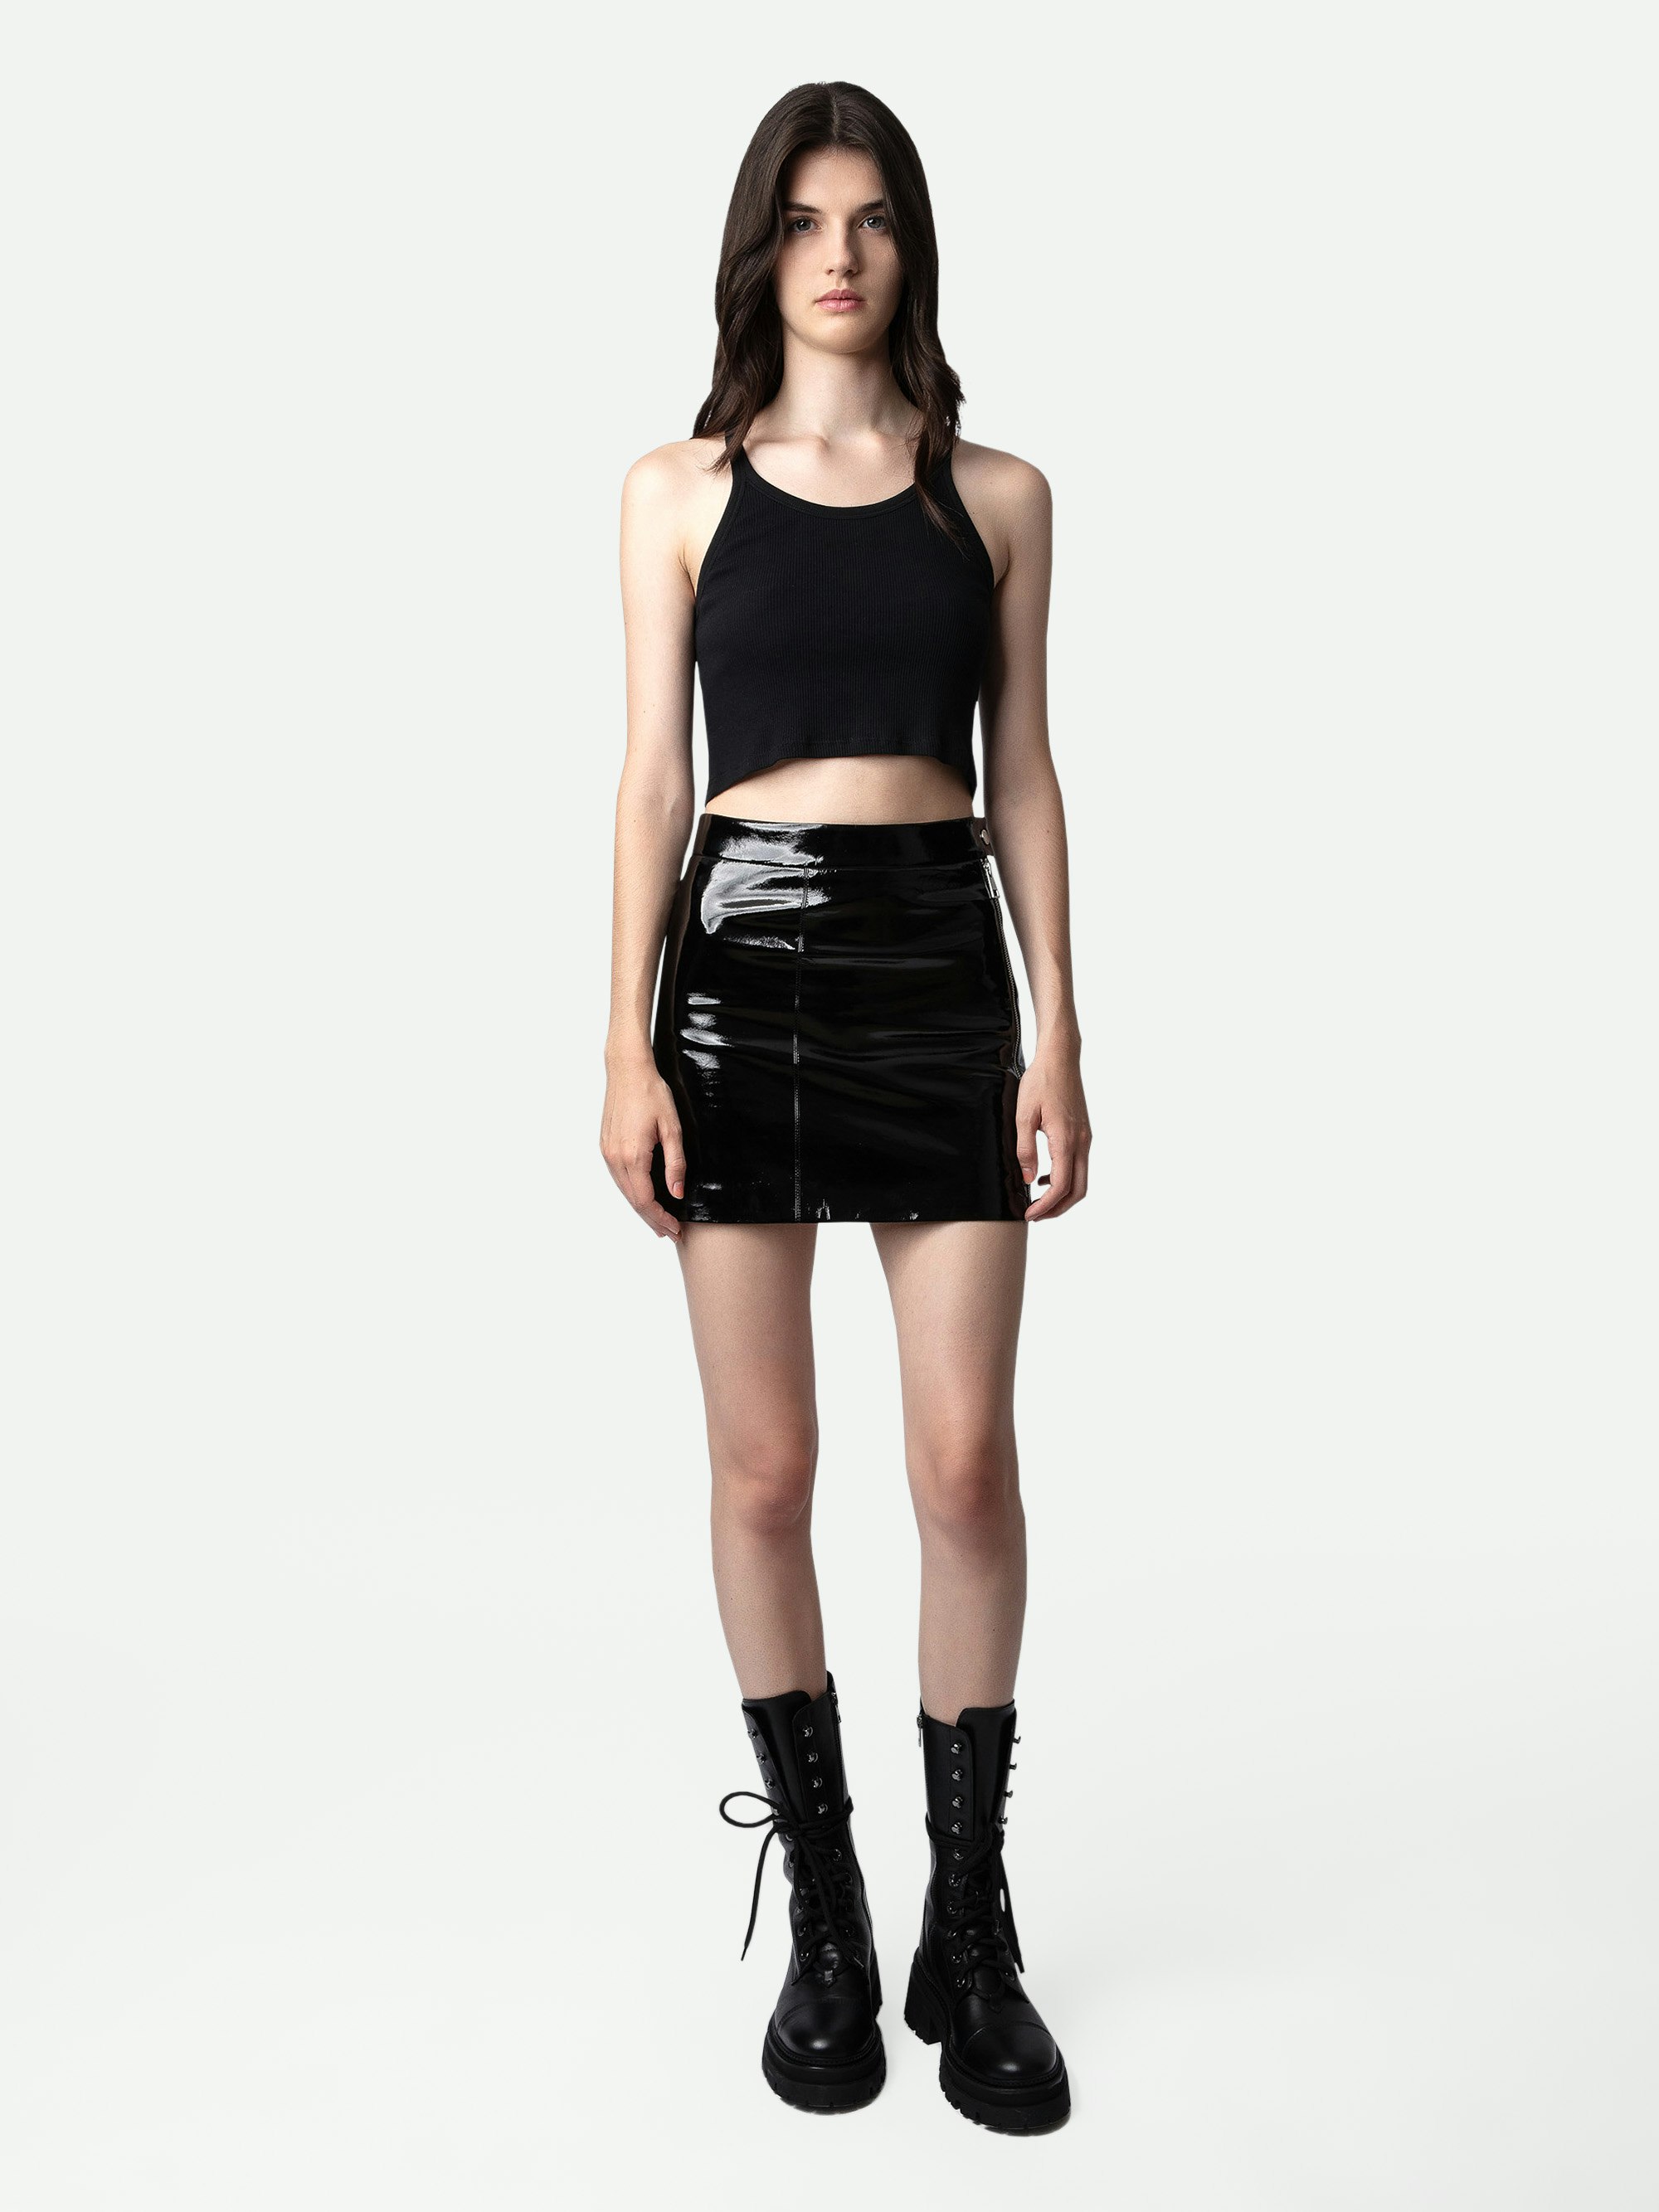 Jinette Vinyl Skirt - Women’s short black vinyl leather skirt with zip.